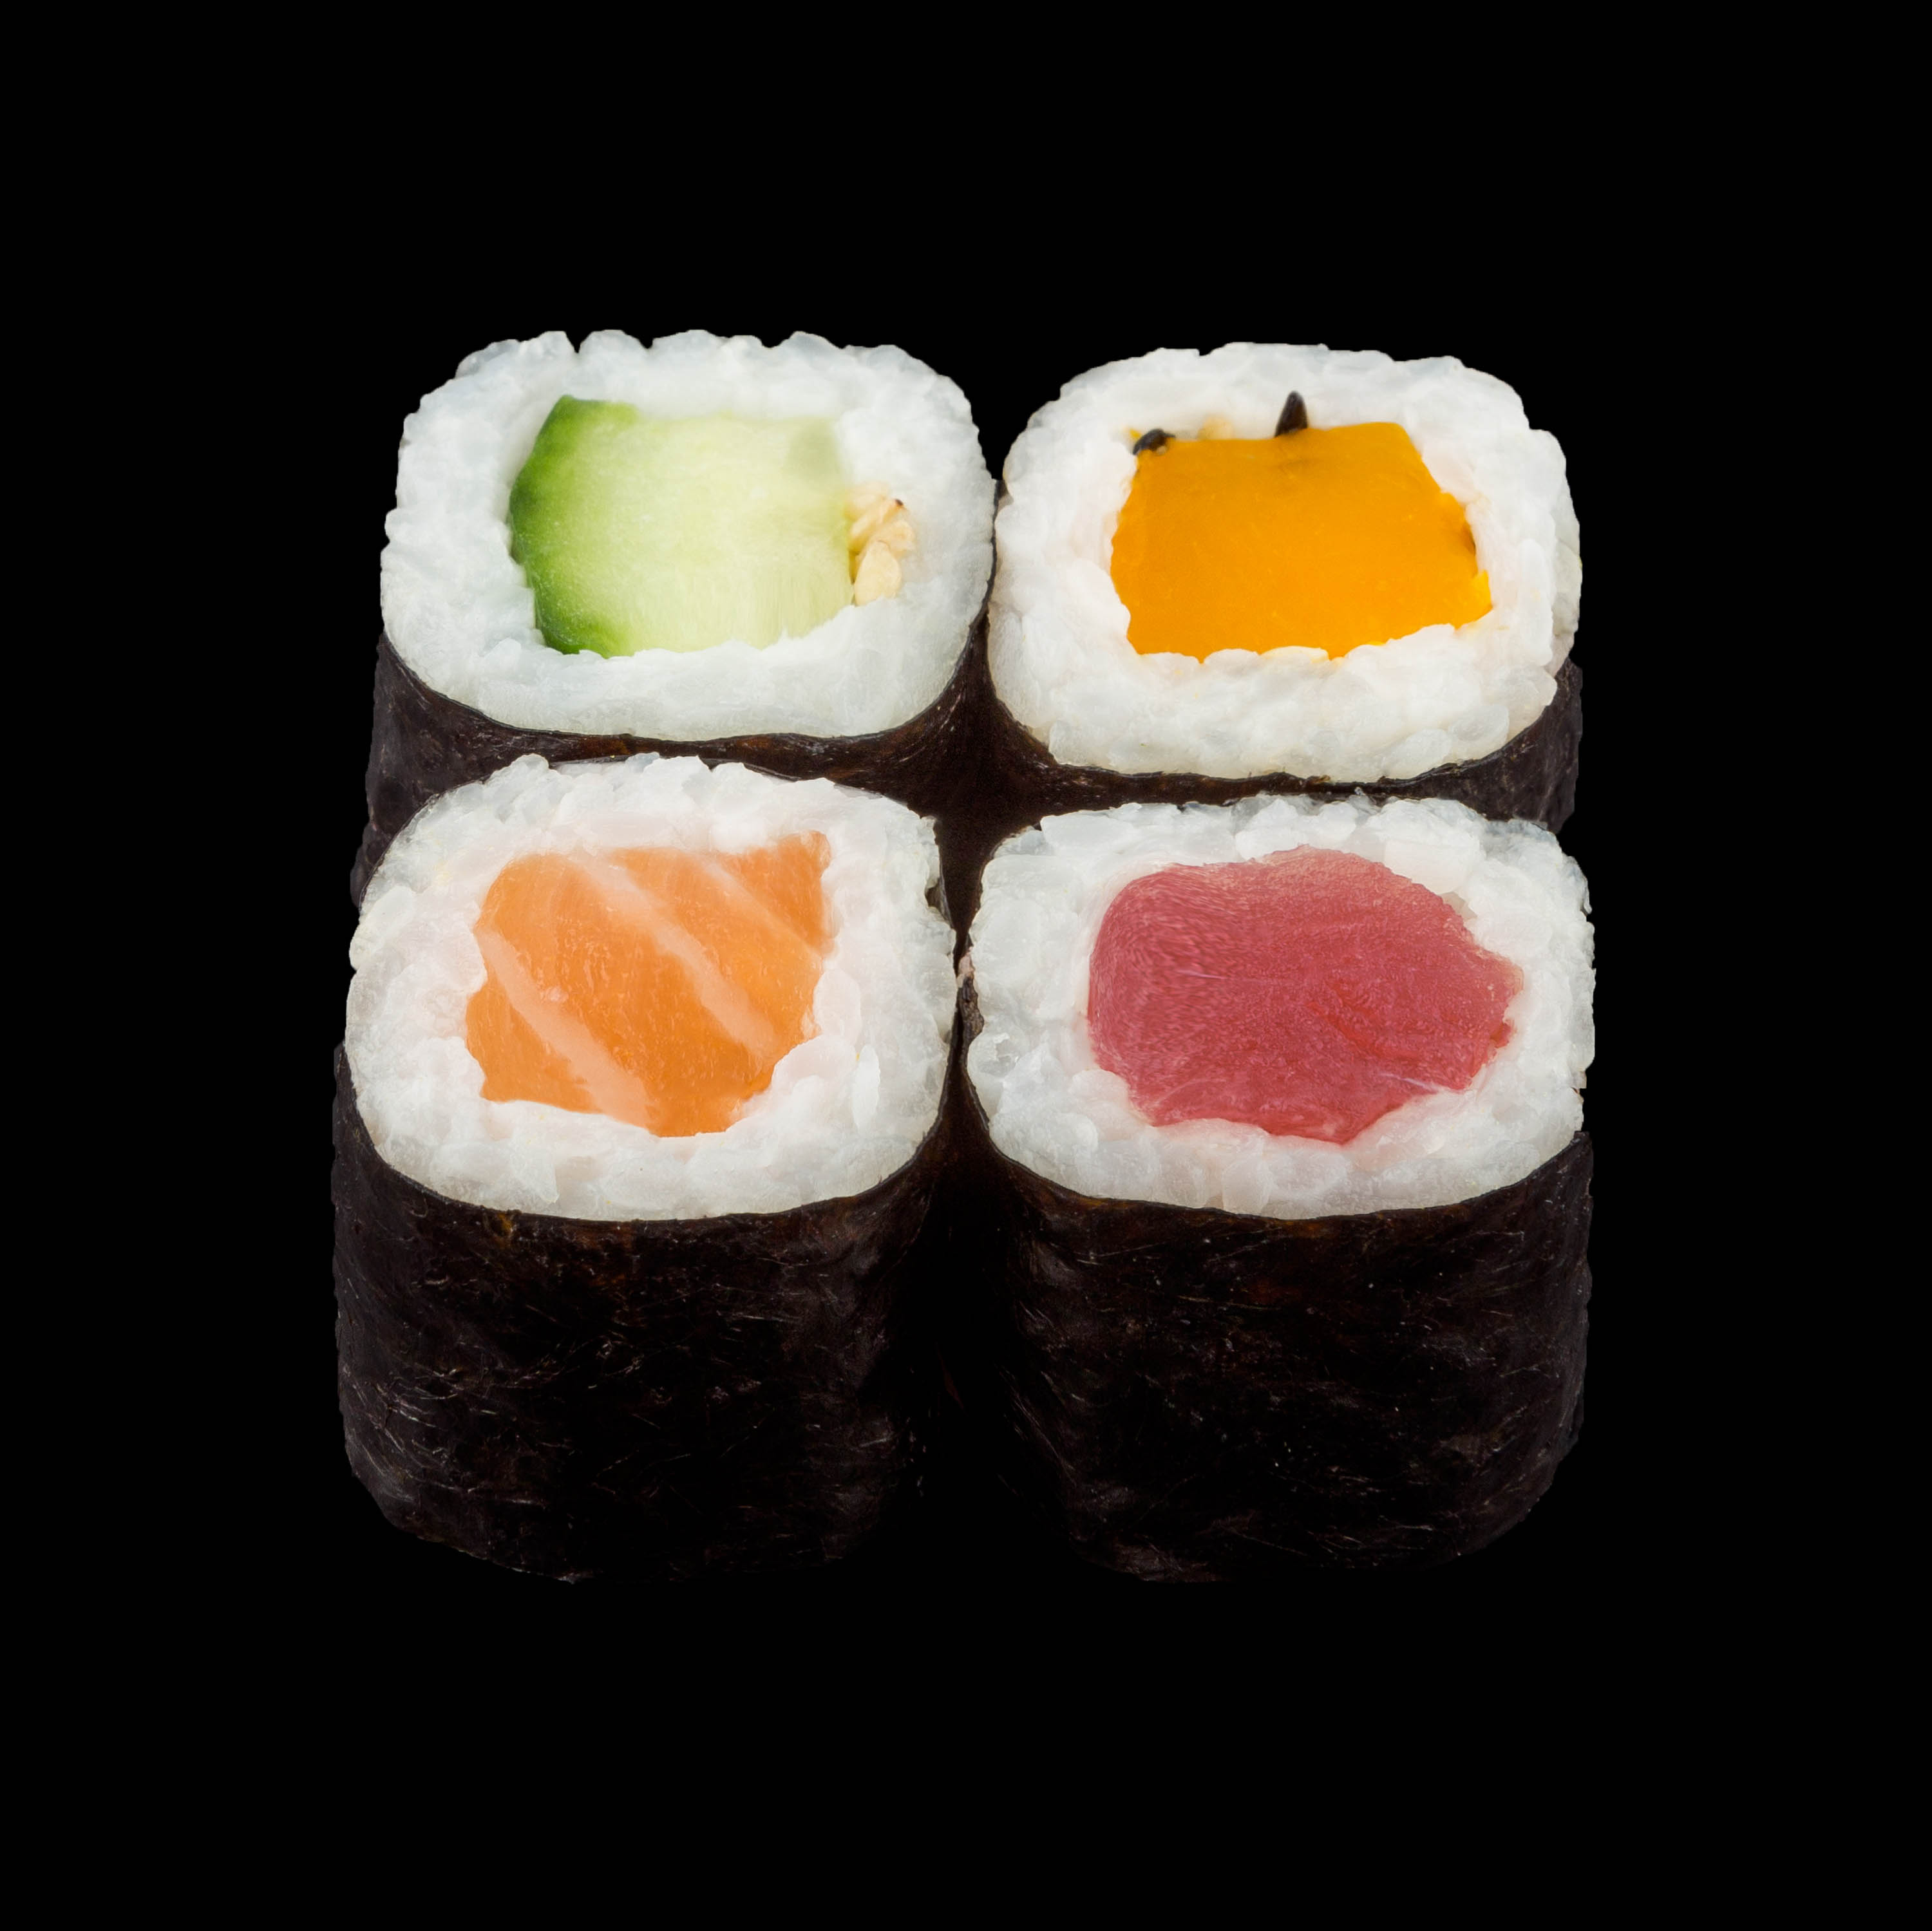 Fotografo sushi pesce pezzi crudi con riso bianco su fondo nero o bianco